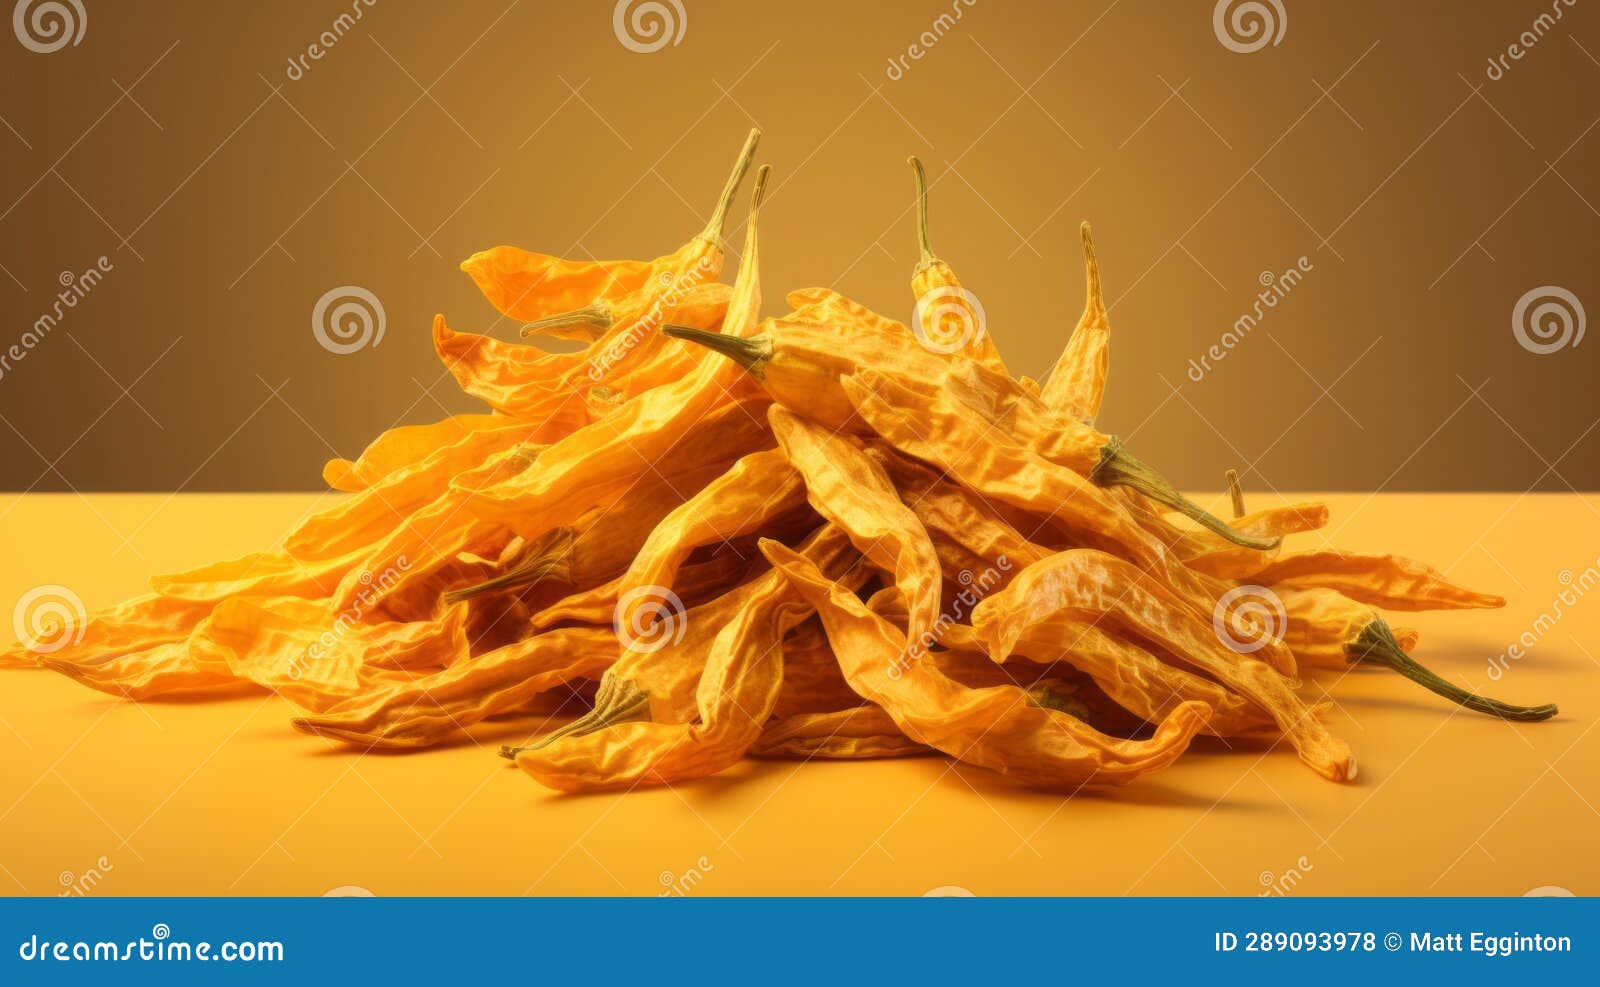 aji amarillo chiles dried